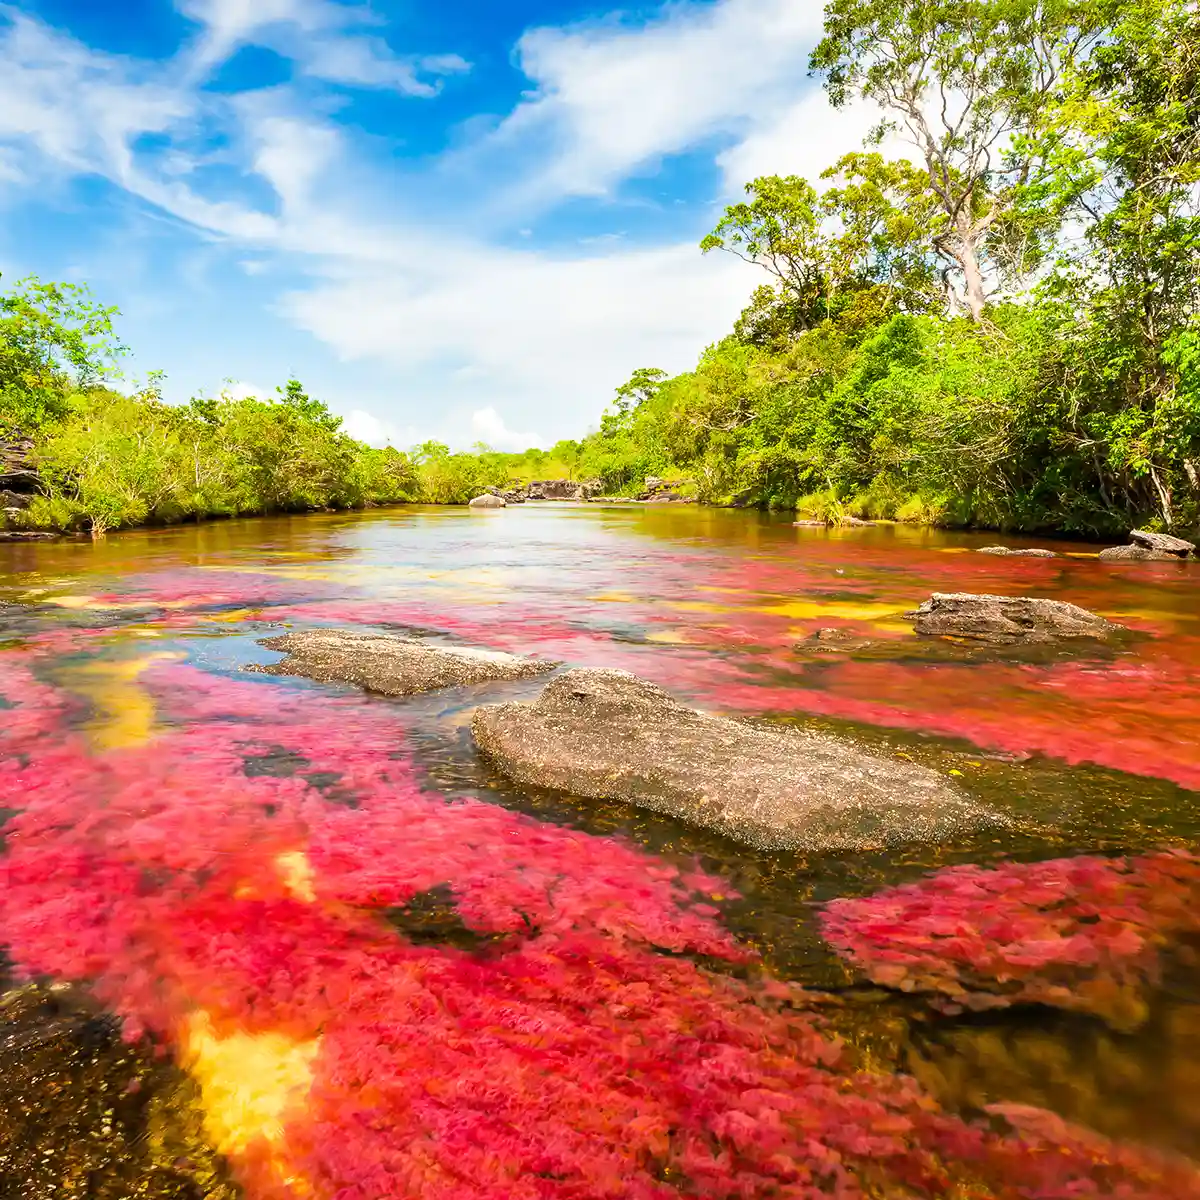 Caño Cristales Multicolored River In Colombia